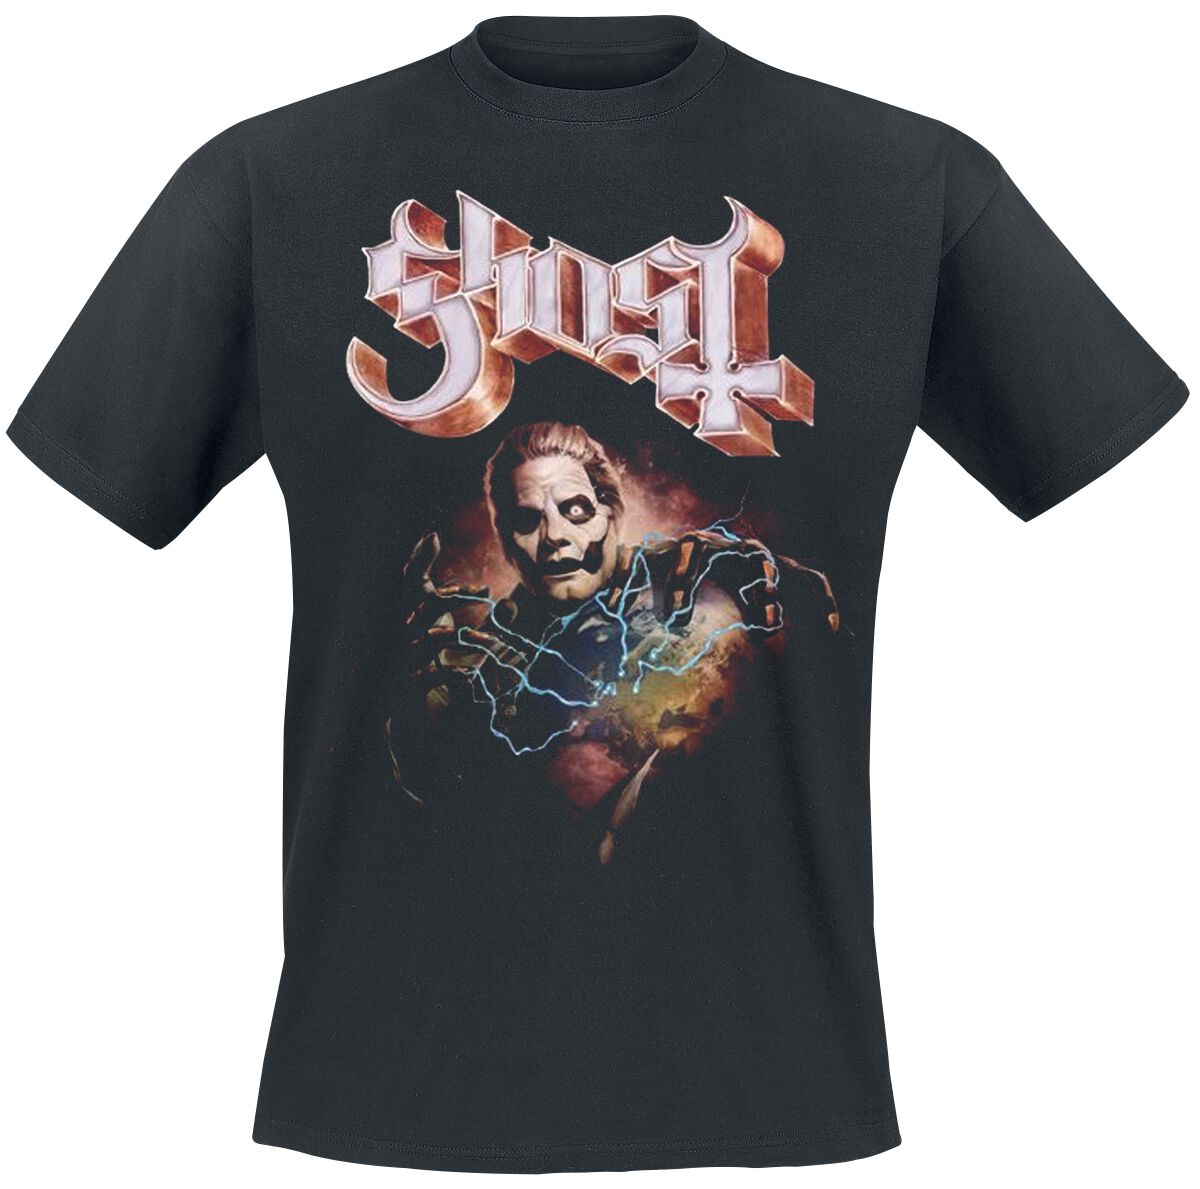 Image of T-Shirt di Ghost - Europe 23 Admat Tour Shirt - S a 4XL - Uomo - nero